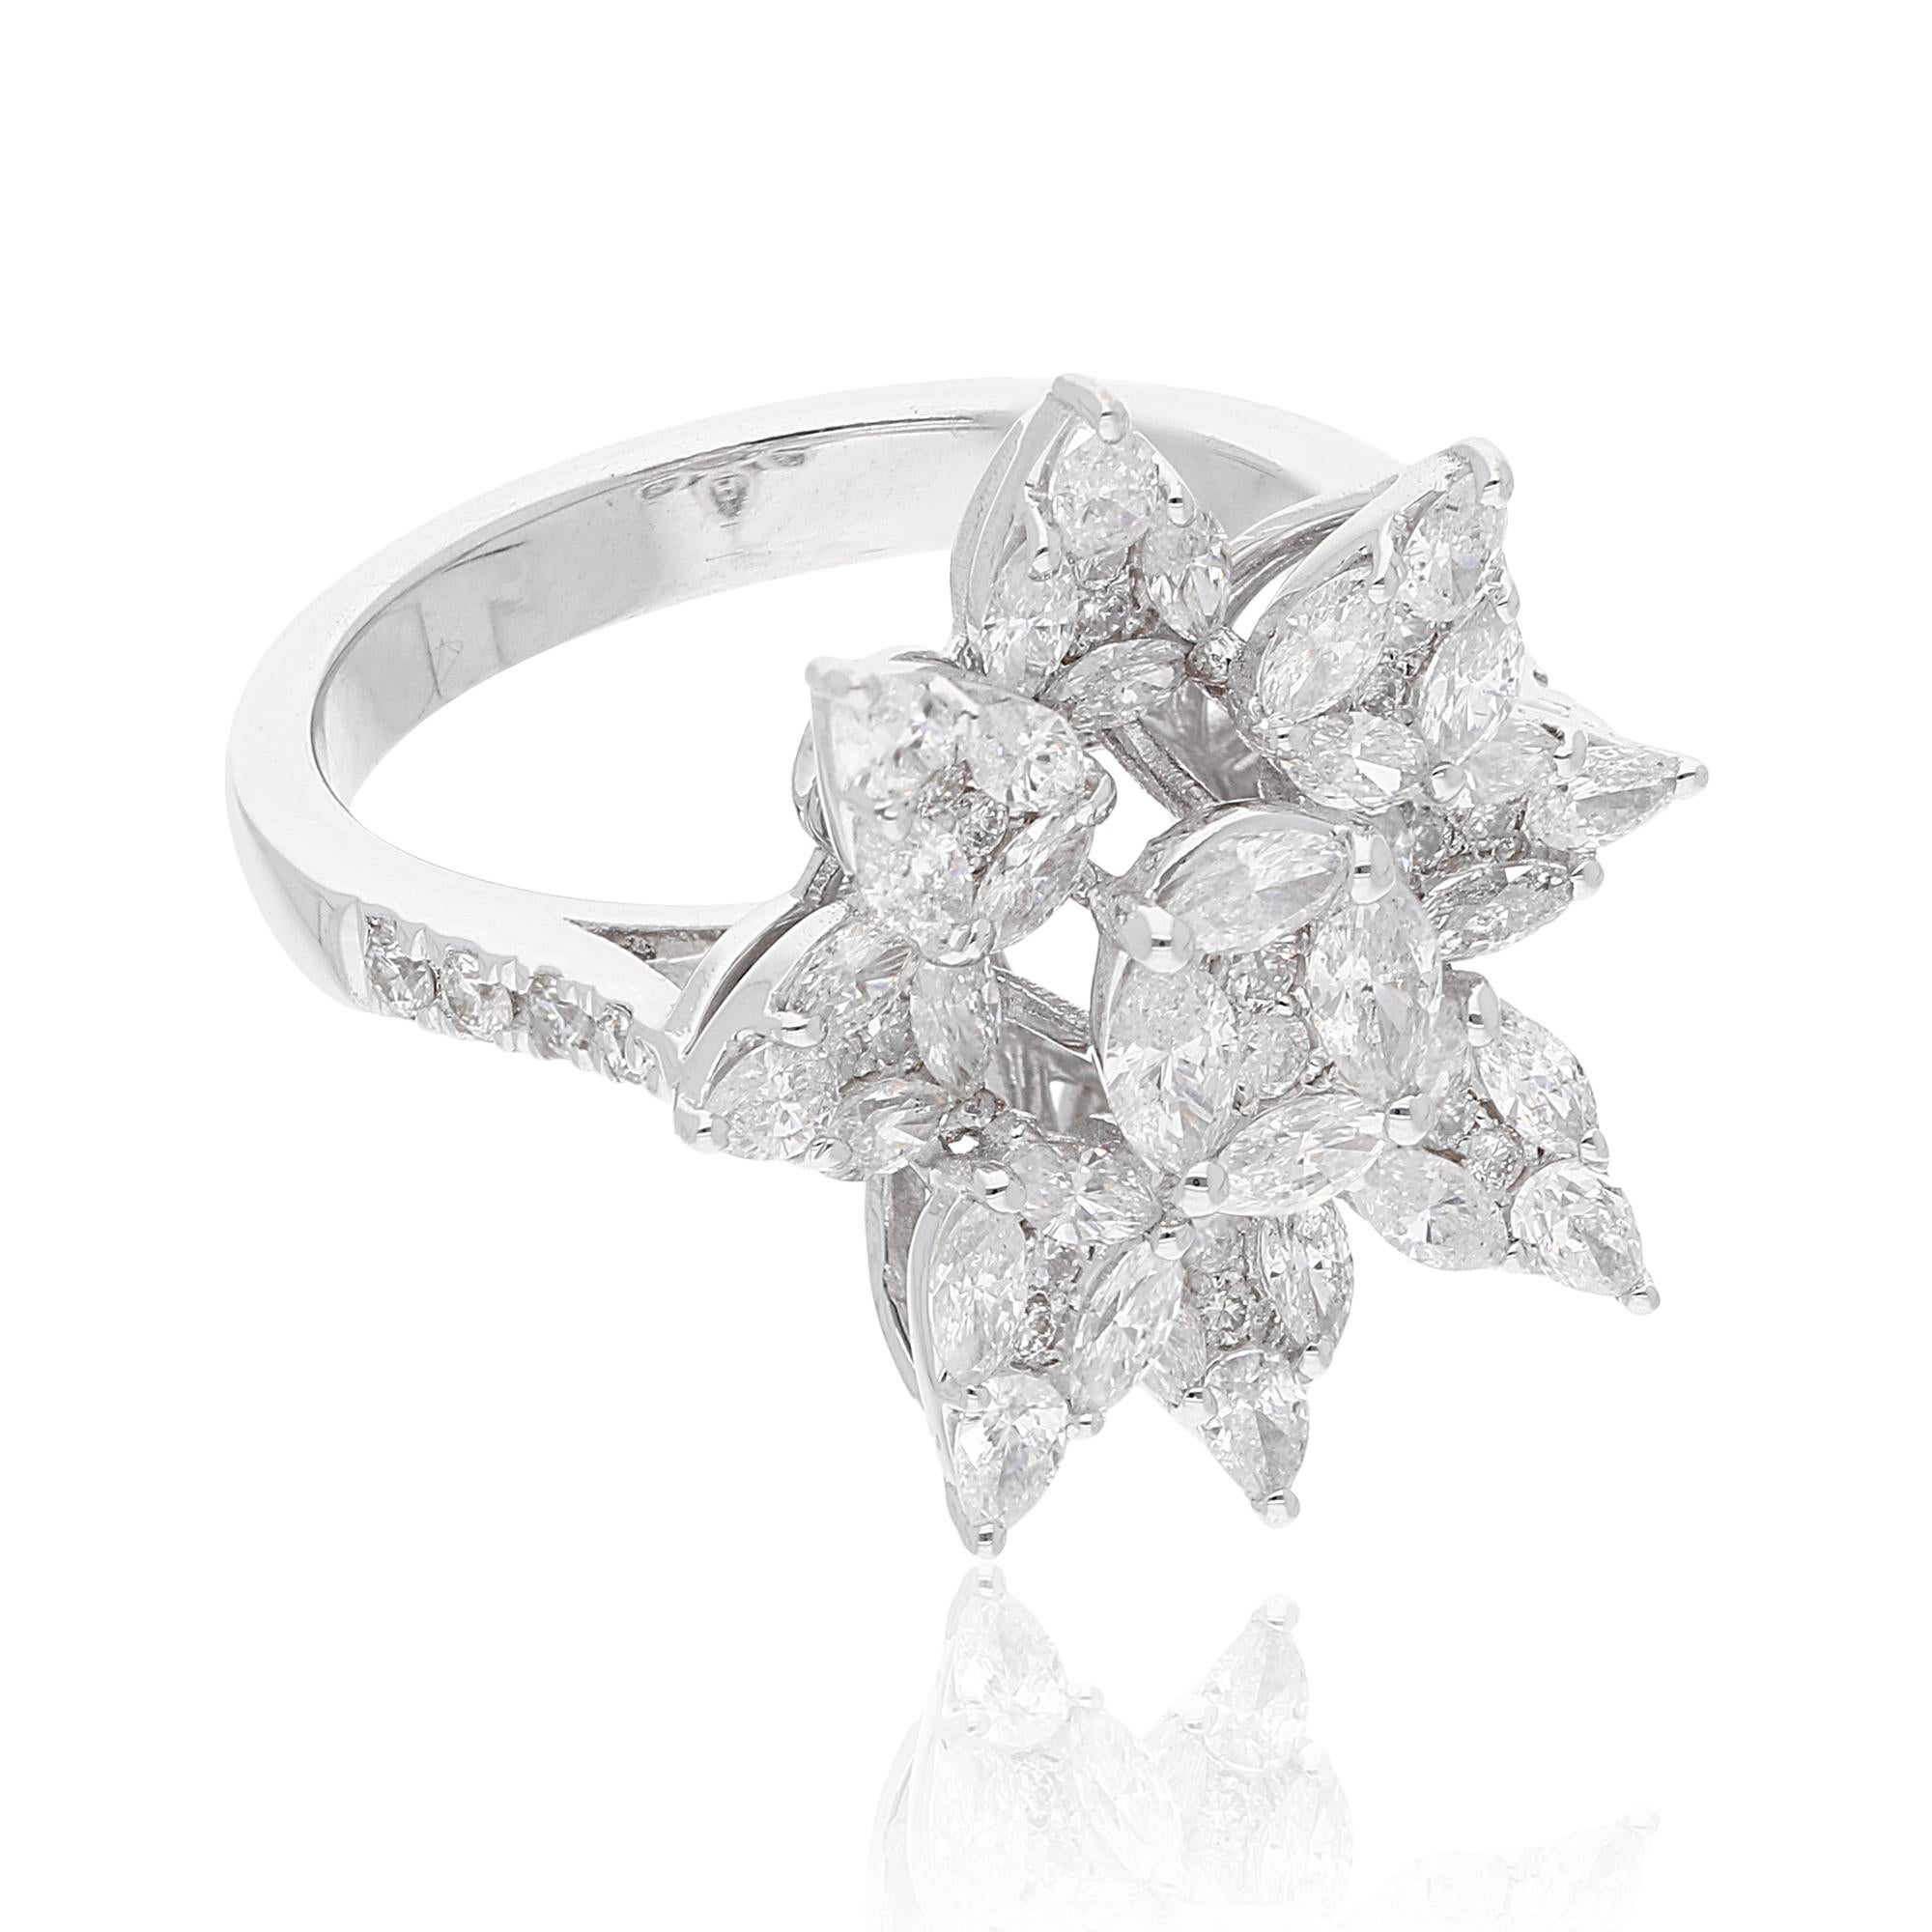 Lassen Sie sich von der luxuriösen Anziehungskraft dieses exquisiten Rings verführen und machen Sie ihn zum Symbol Ihres einzigartigen Stils und Ihrer Anmut. Mit seinen natürlichen Diamanten, der feinen Handwerkskunst aus Weißgold und dem